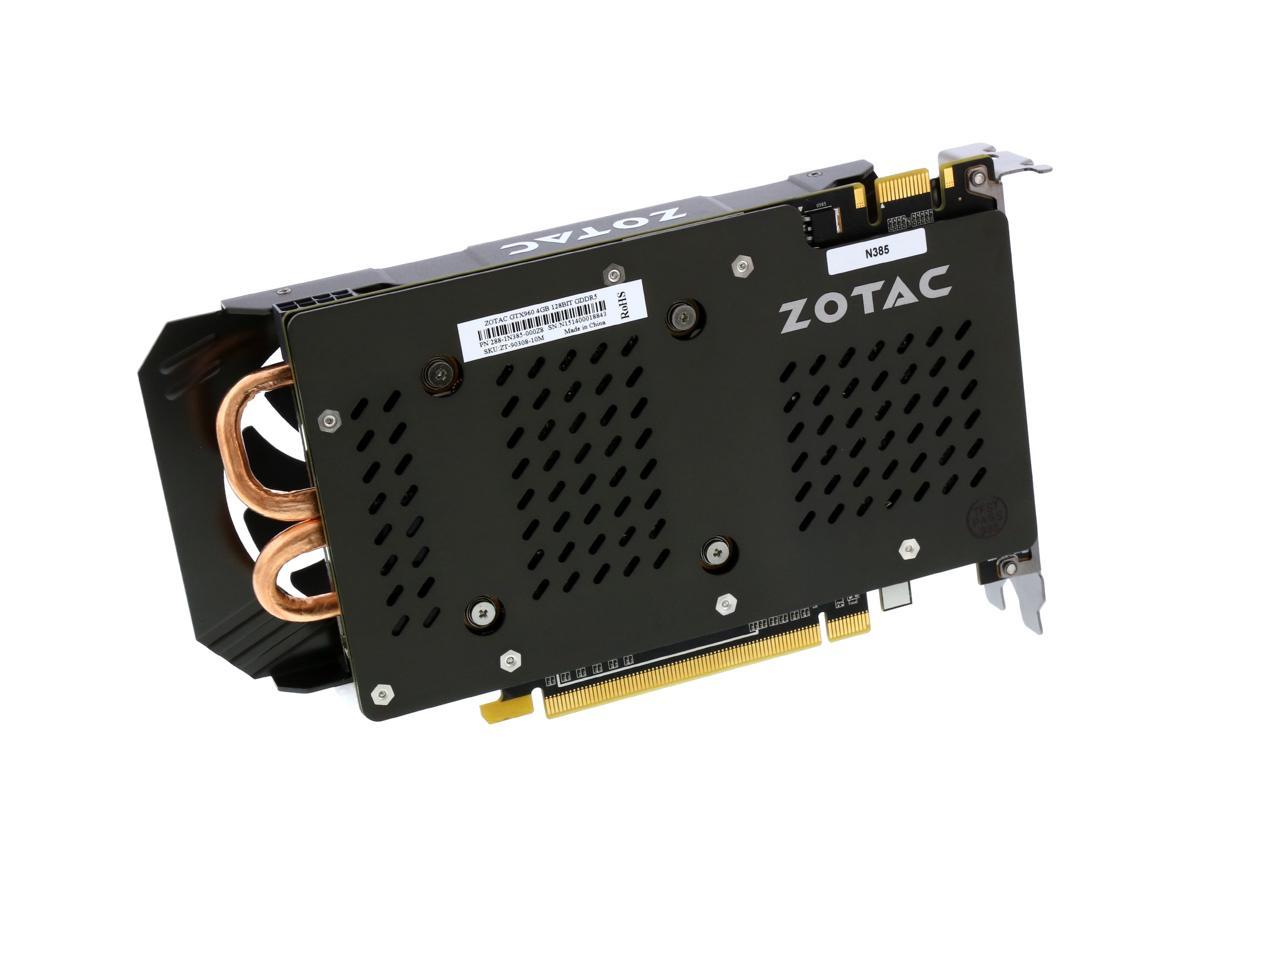 ZOTAC GeForce GTX 960 4G, ZT-90308-10M - Newegg.com